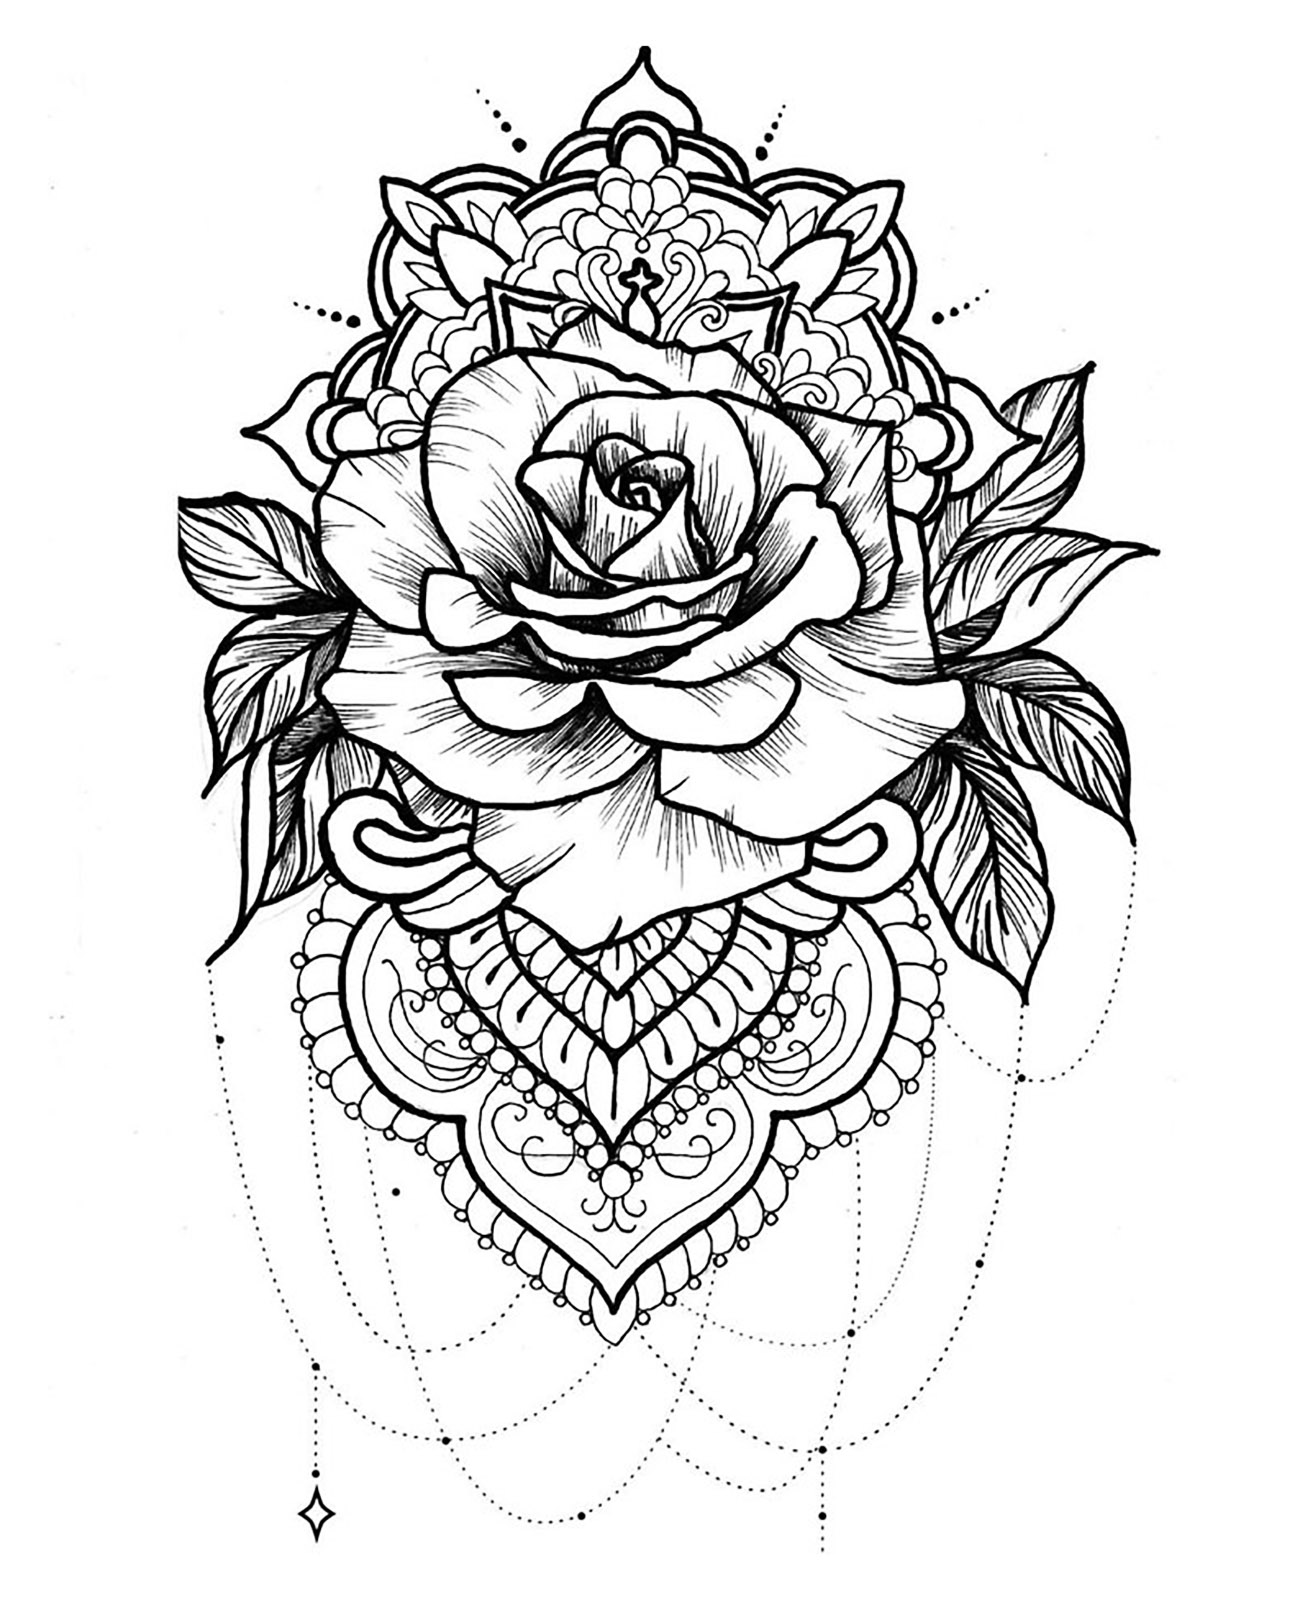 Tattoo idea with a Mandala including a beautiful rose